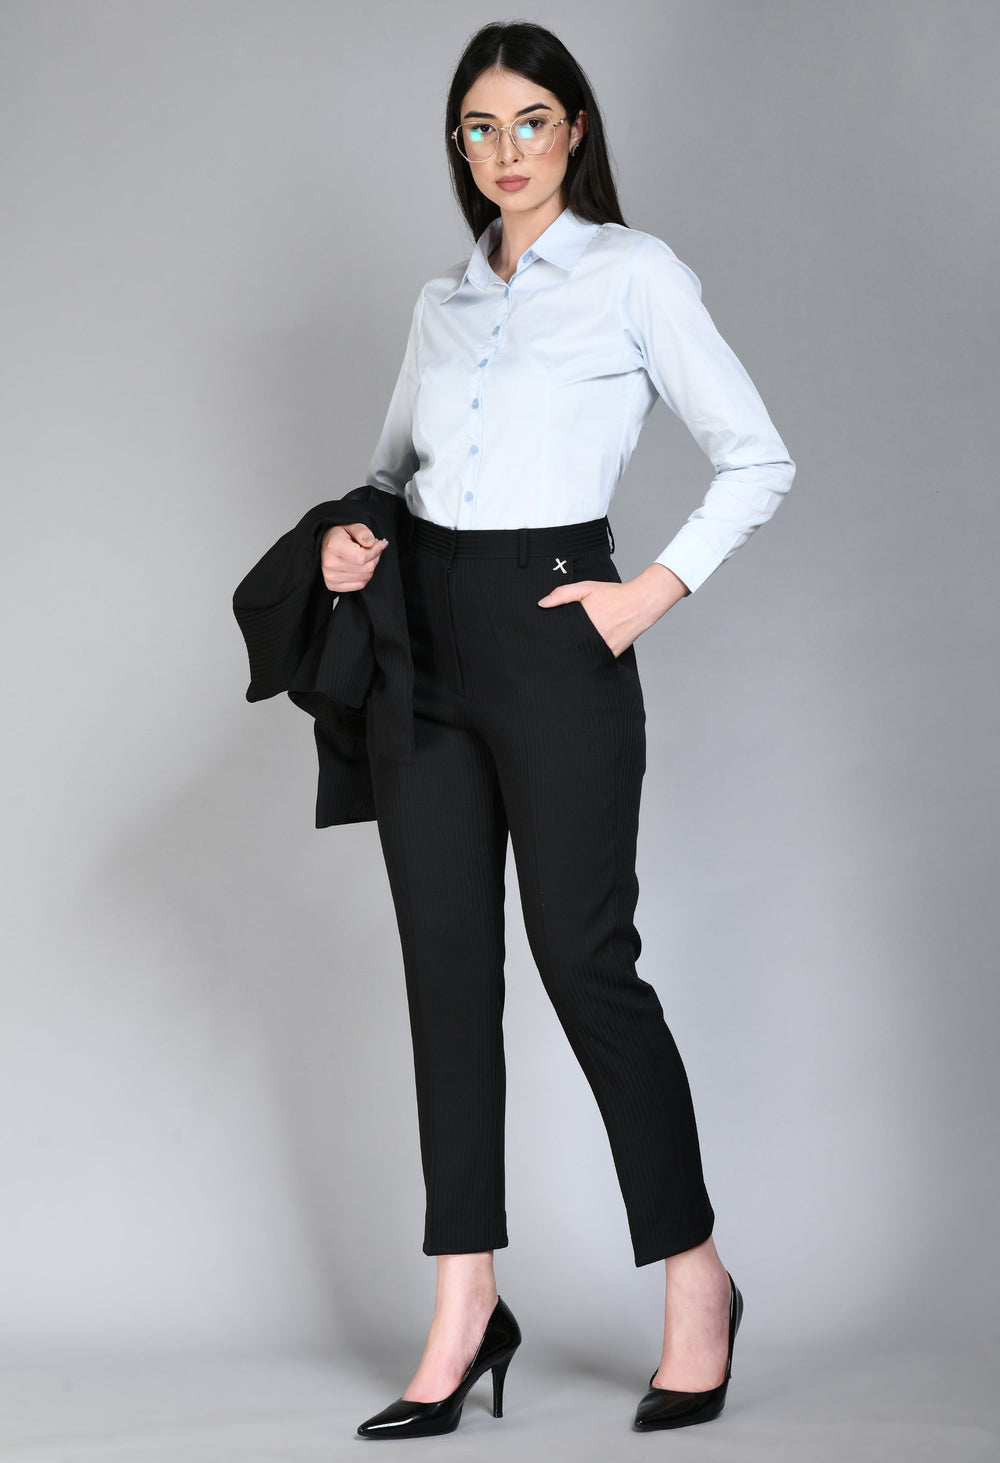 Black-Cotton-Blend-Fearlessness-Strip-Short-Blazer-Pant-Suit